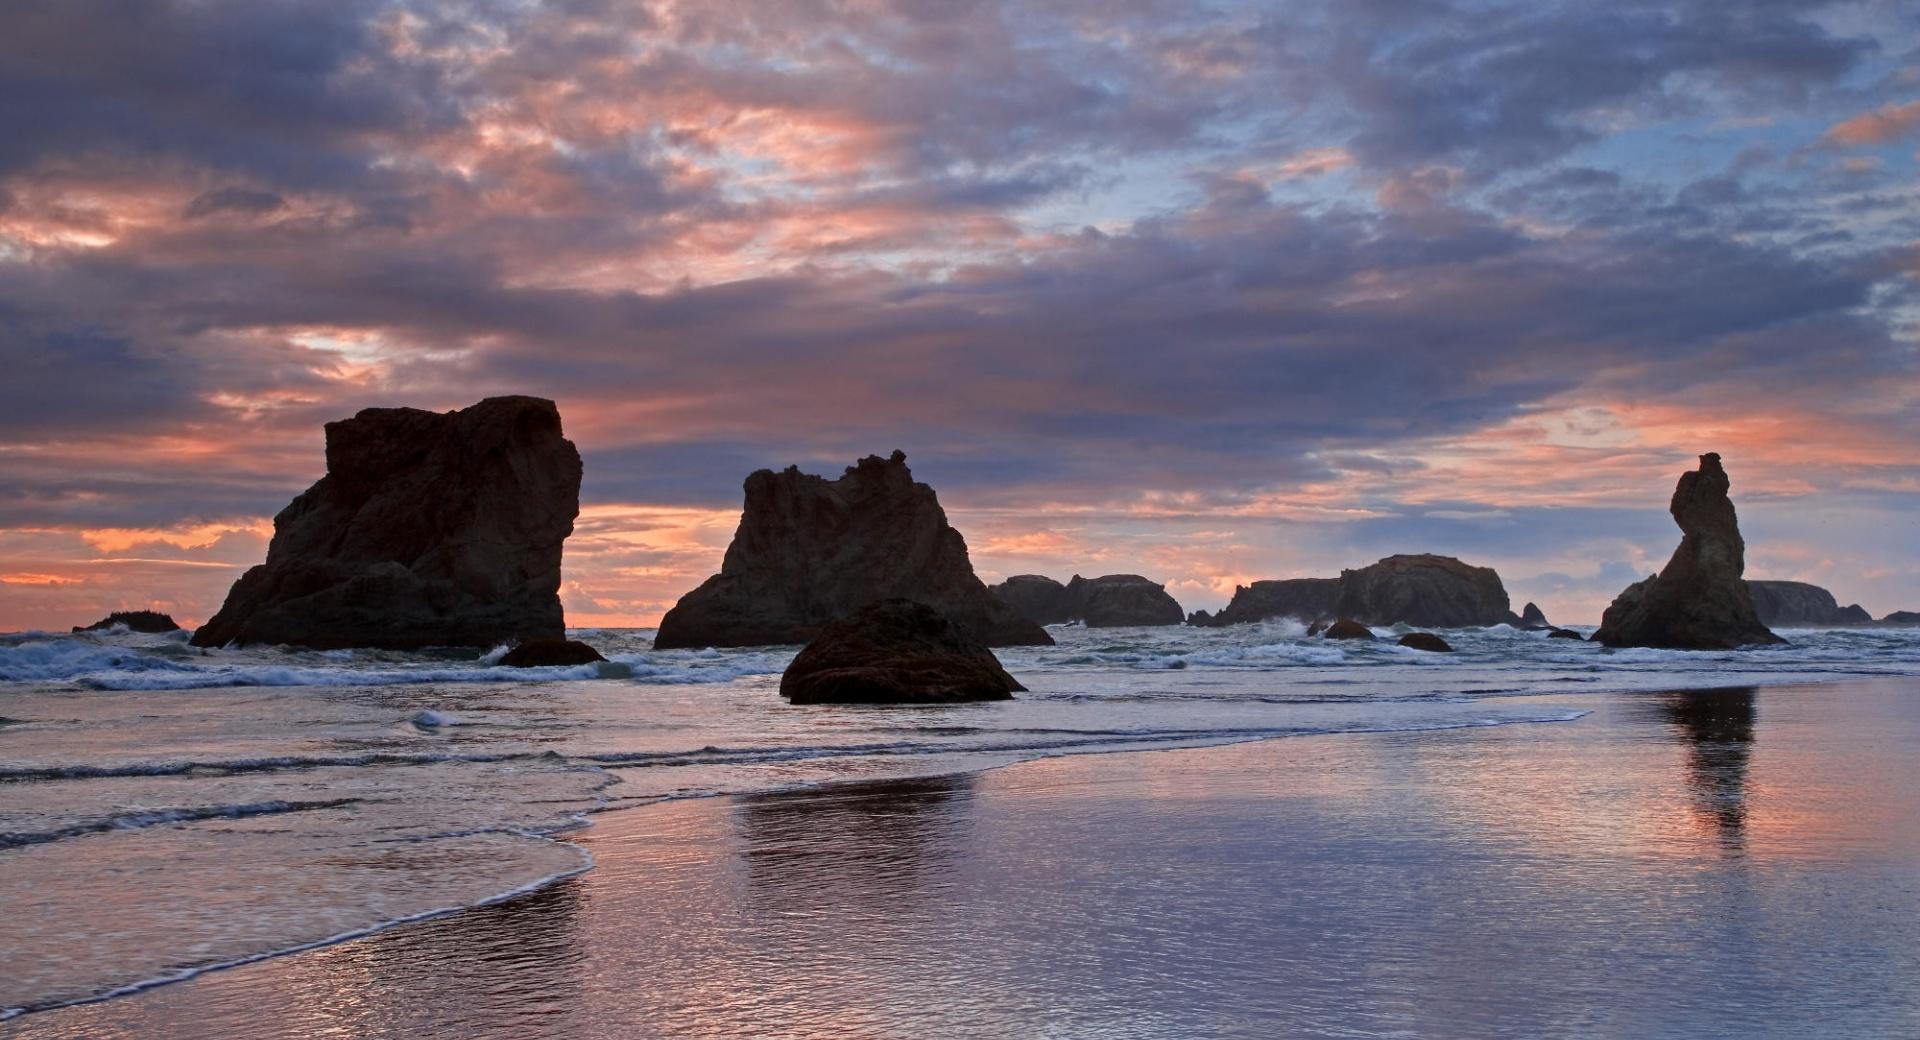 Sea Stacks At Sunset Bandon Oregon at 1024 x 1024 iPad size wallpapers HD quality